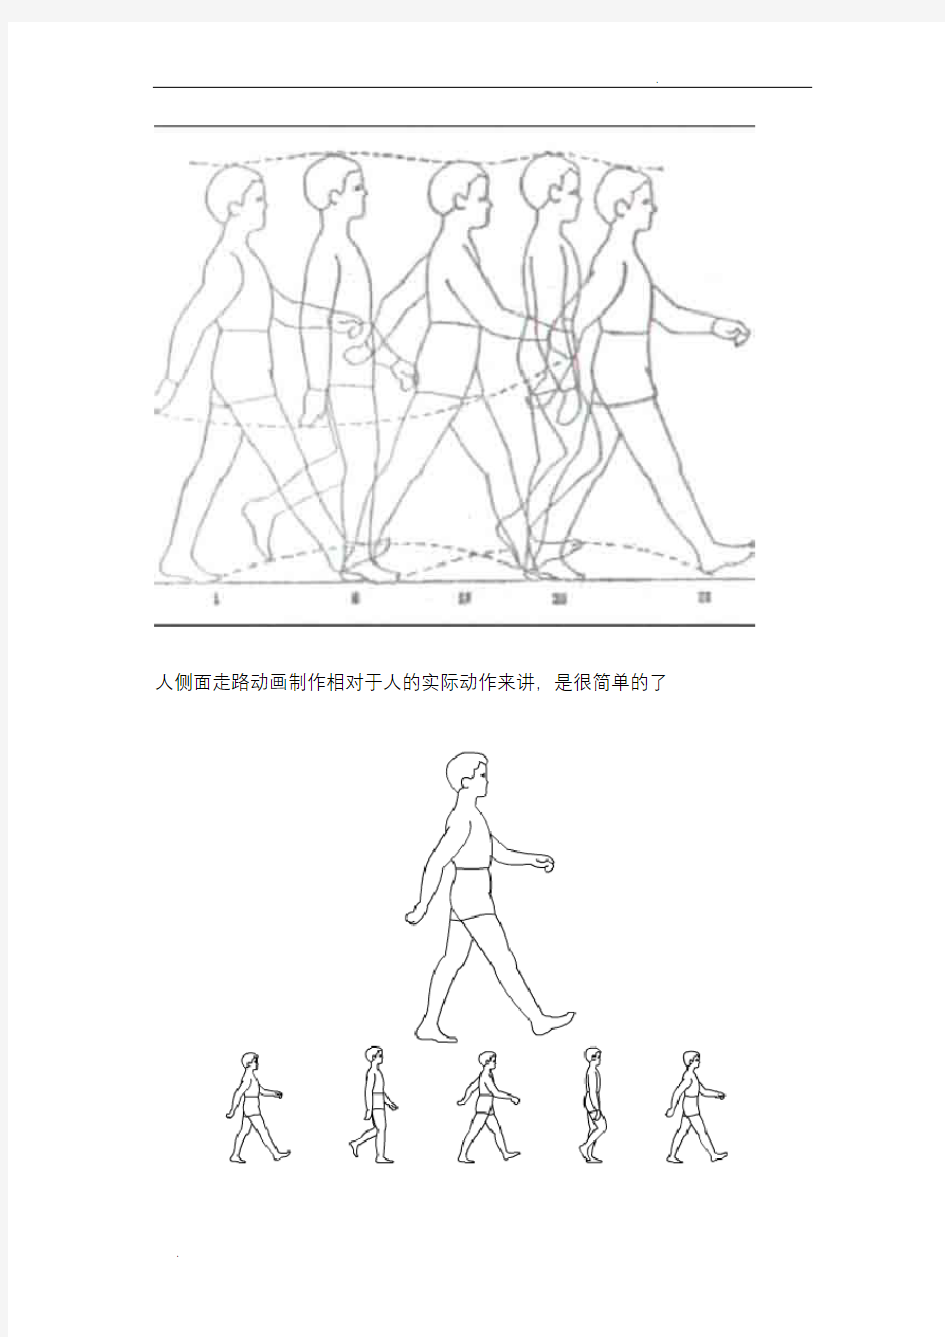 人侧面走路动画制作与走路动作分解